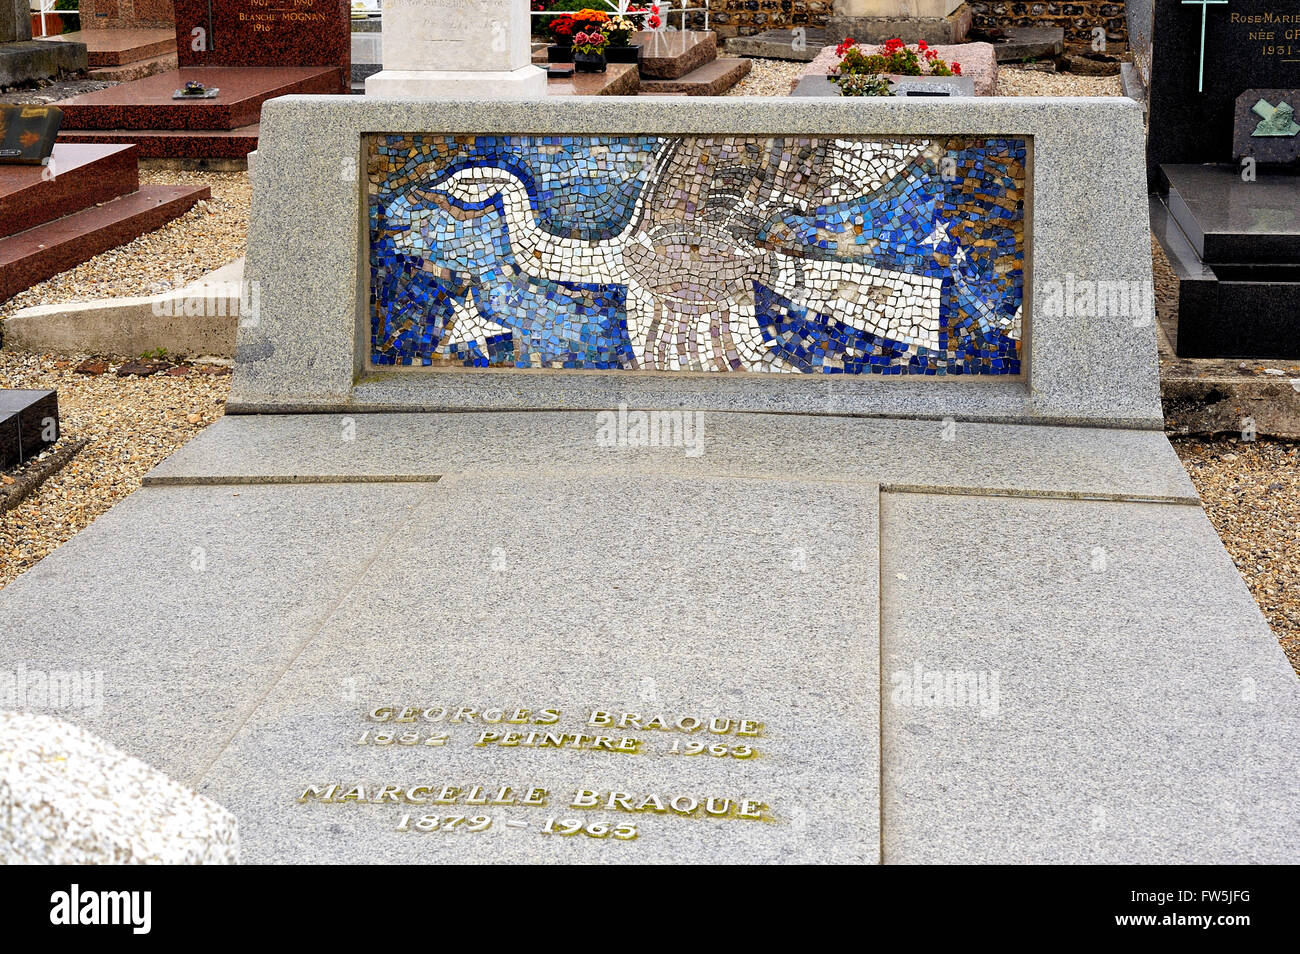 Tombe de George Braque, dans le cimetière de l'église de Saint-ValŽry, Normandie. Go, peintre fauve et co-fondateur (avec Picasso) du mouvement cubiste, 13 mai 1882 - 31 août 1963. Banque D'Images